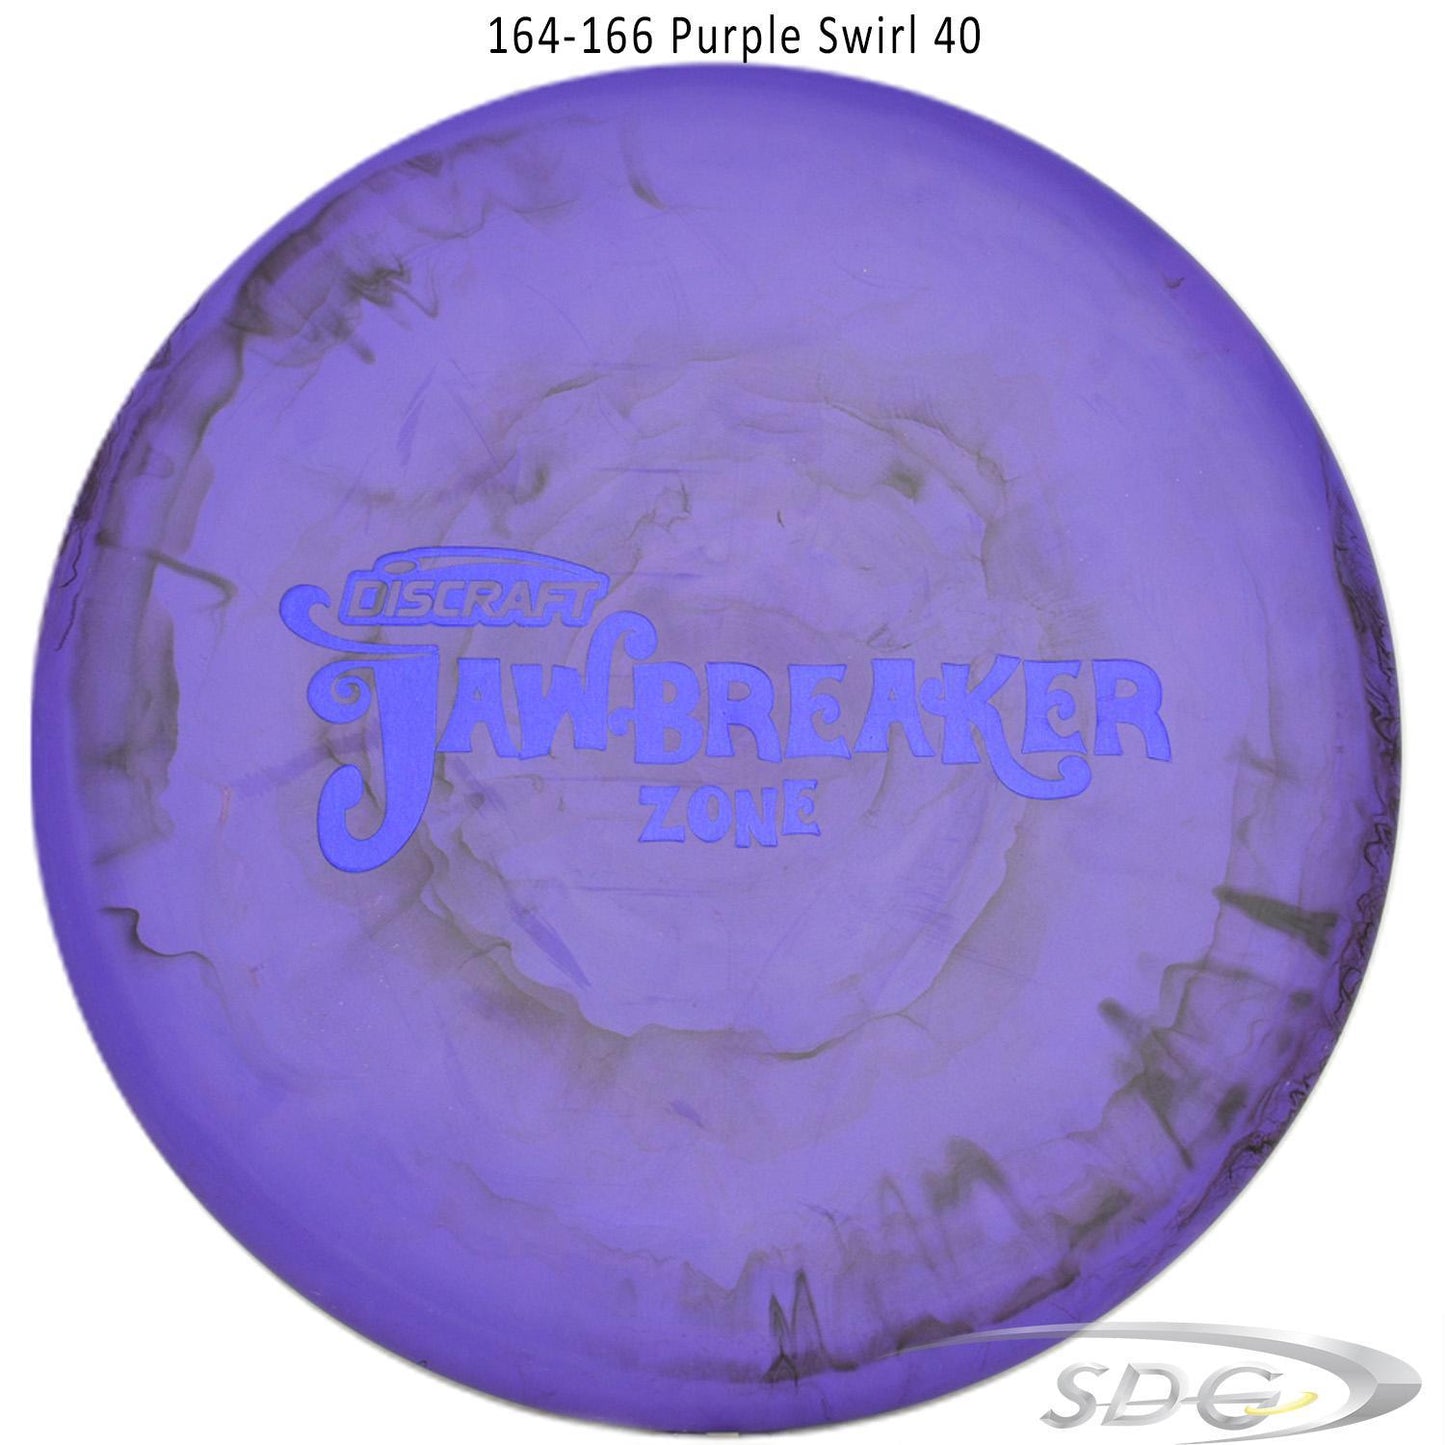 discraft-jawbreaker-zone-disc-golf-putter 164-166 Purple Swirl 40